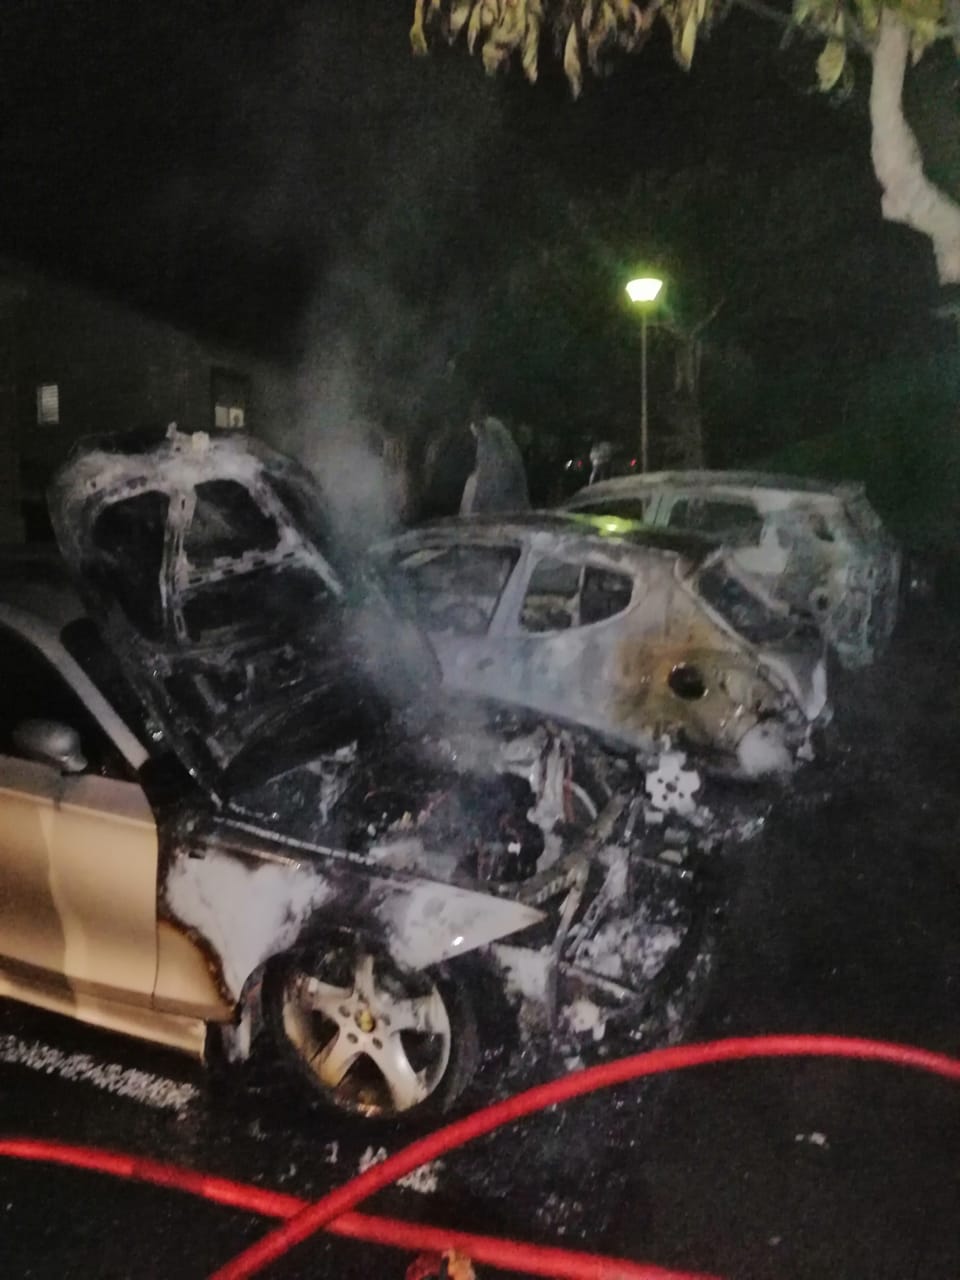     Incendie de véhicules à Sainte-Anne : une enquête ouverte

